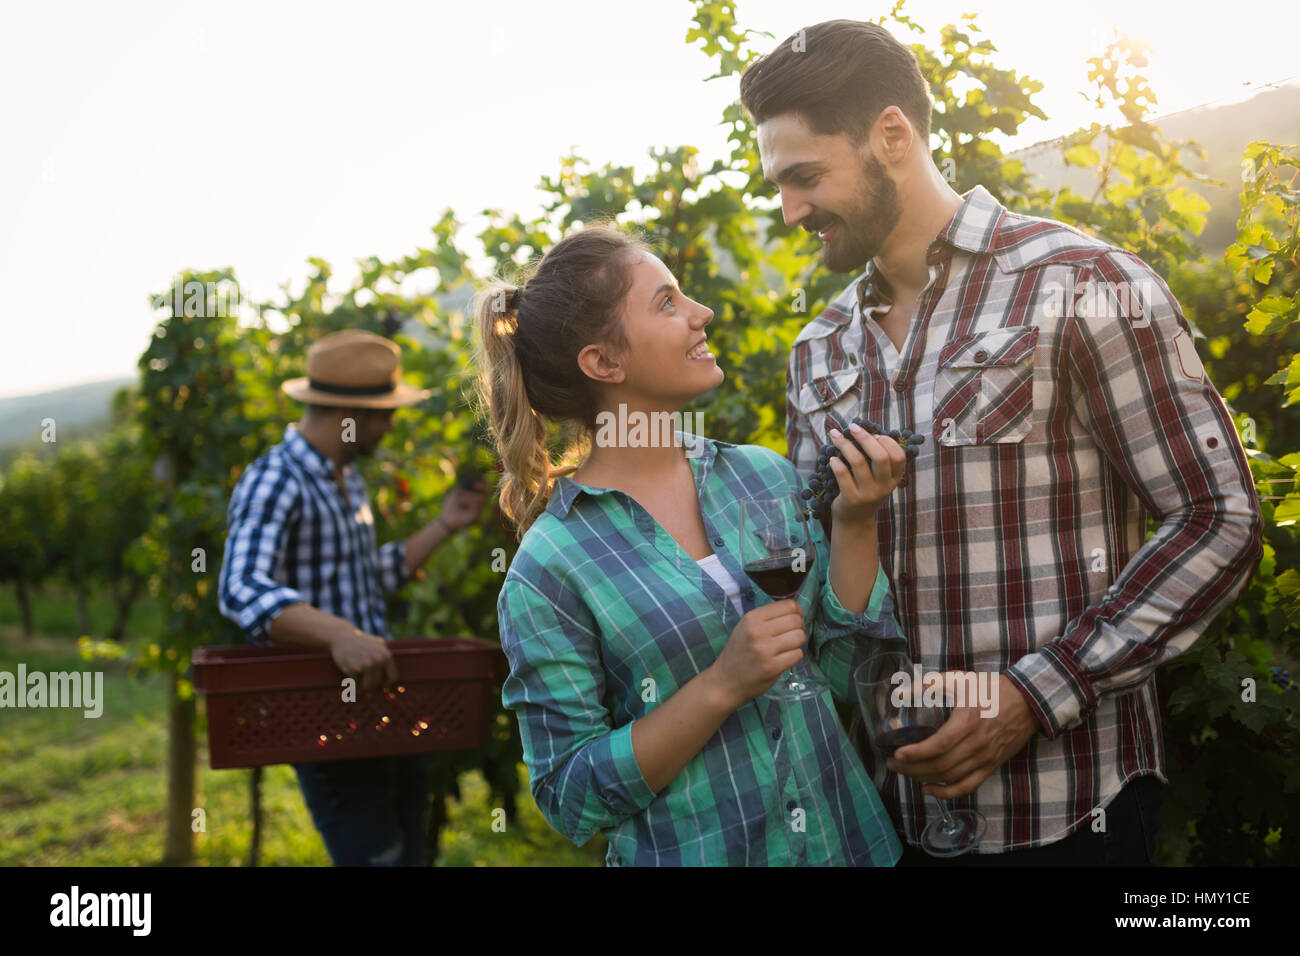 People sampling and tasting wines in winegrowers  vineyard Stock Photo